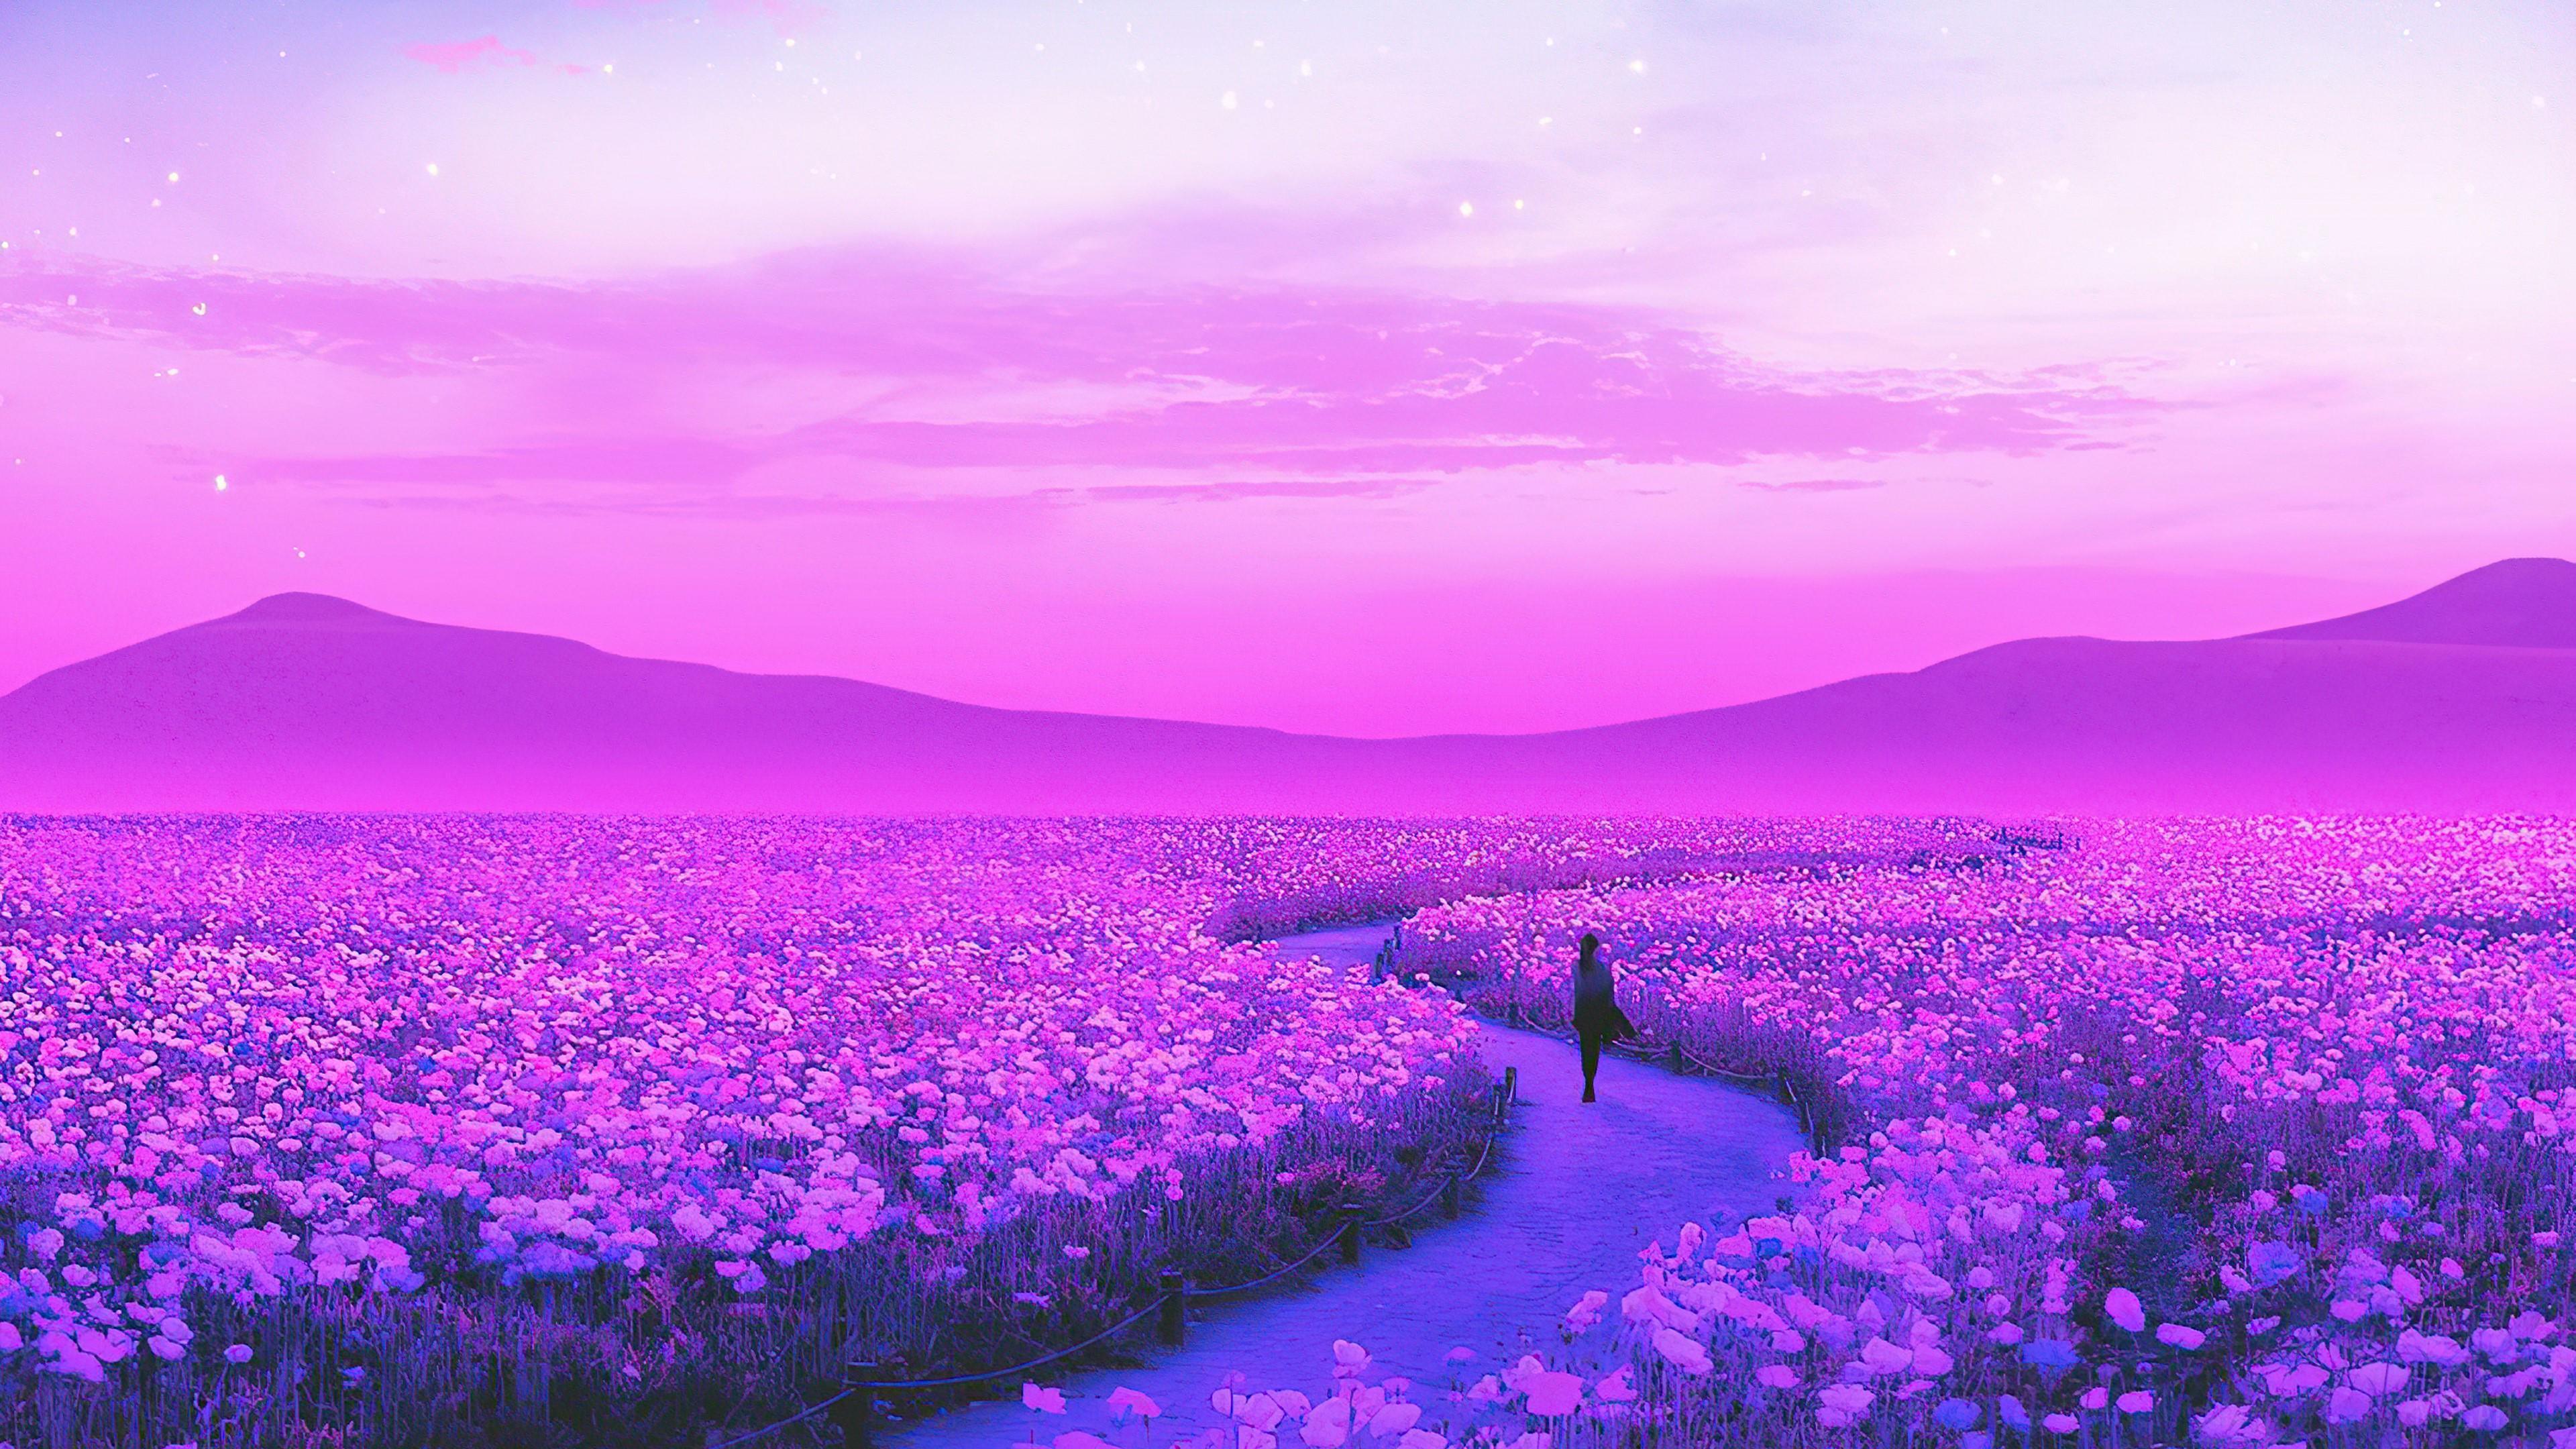 HD wallpaper, Day Dreaming Lavender Field 4K